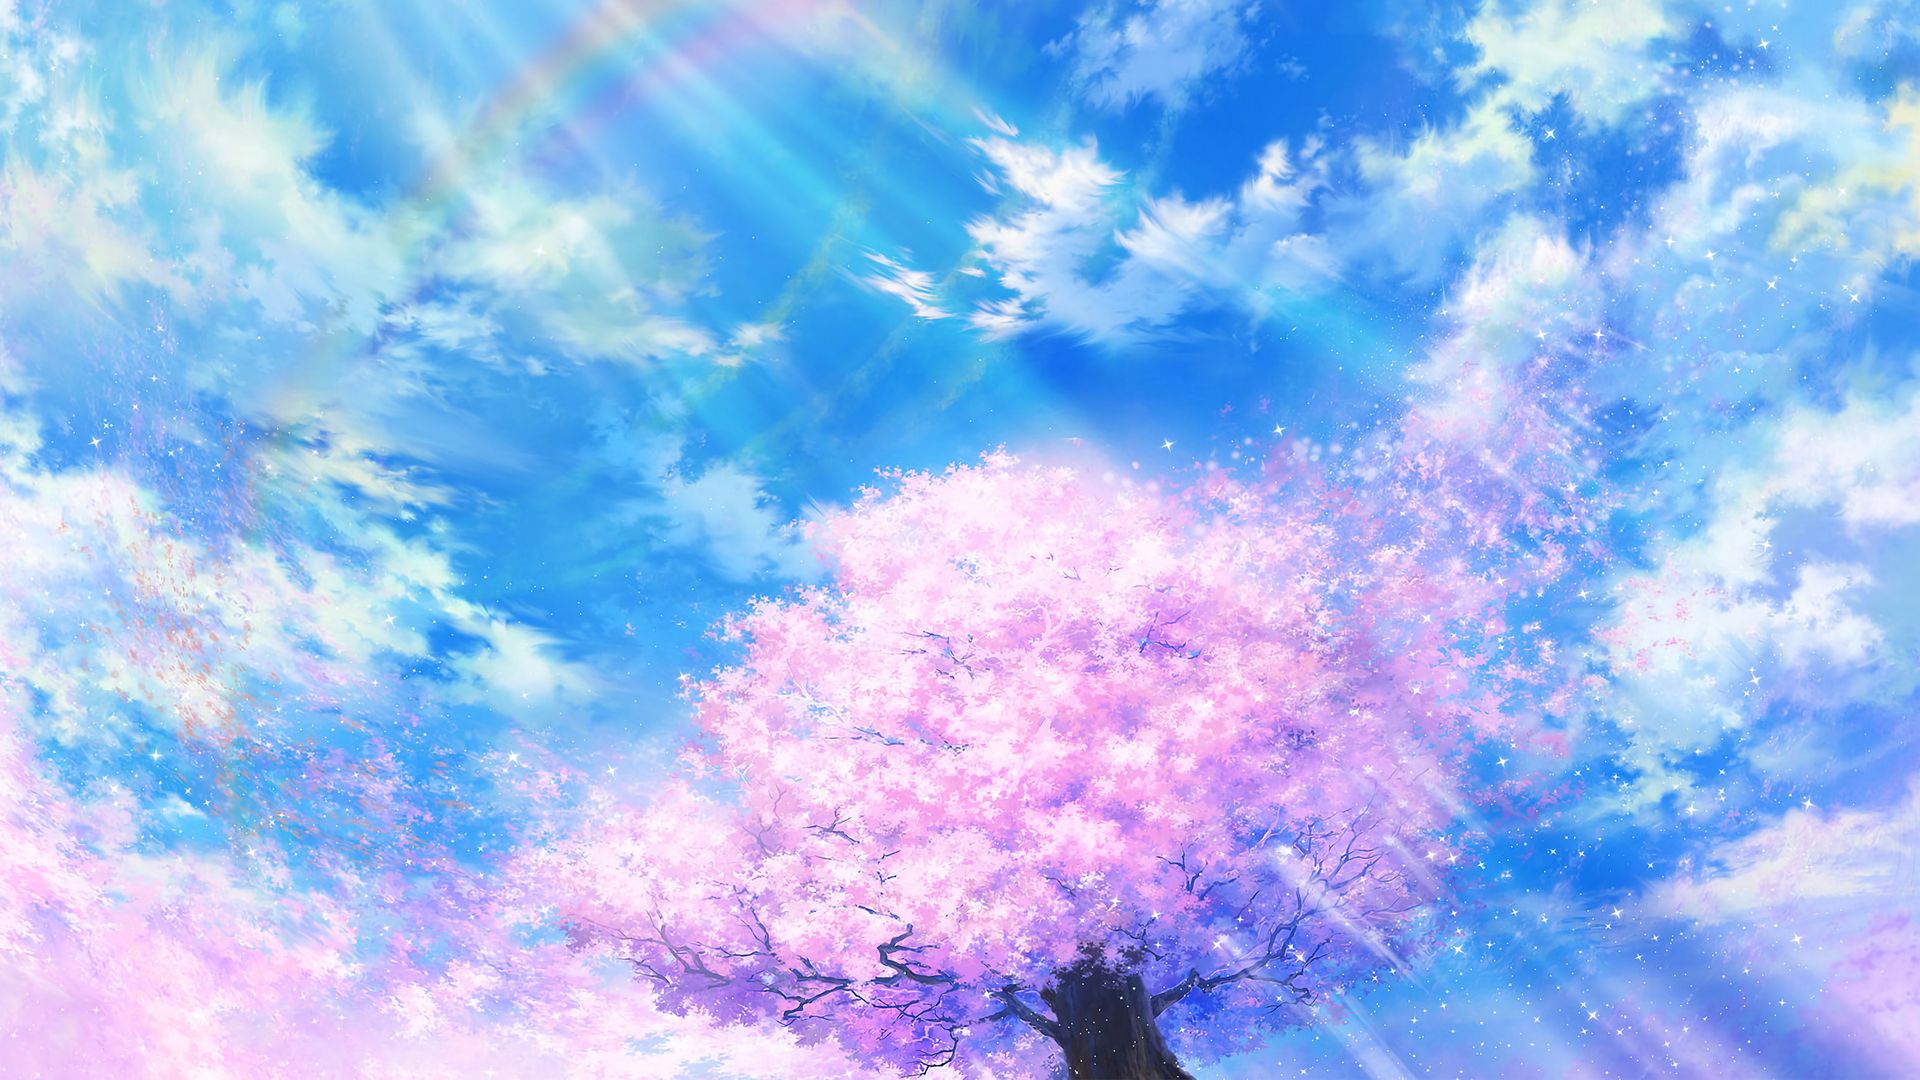 Wallpaper sakura: Hãy khám phá vẻ đẹp ngọt ngào của hình ảnh sakura khi tương tác với môi trường tự nhiên xung quanh. Hình nền này từ lâu đã trở thanh một biểu tượng văn hóa của Nhật Bản, mang đến cho người xem sự yên bình và tràn đầy sức sống.